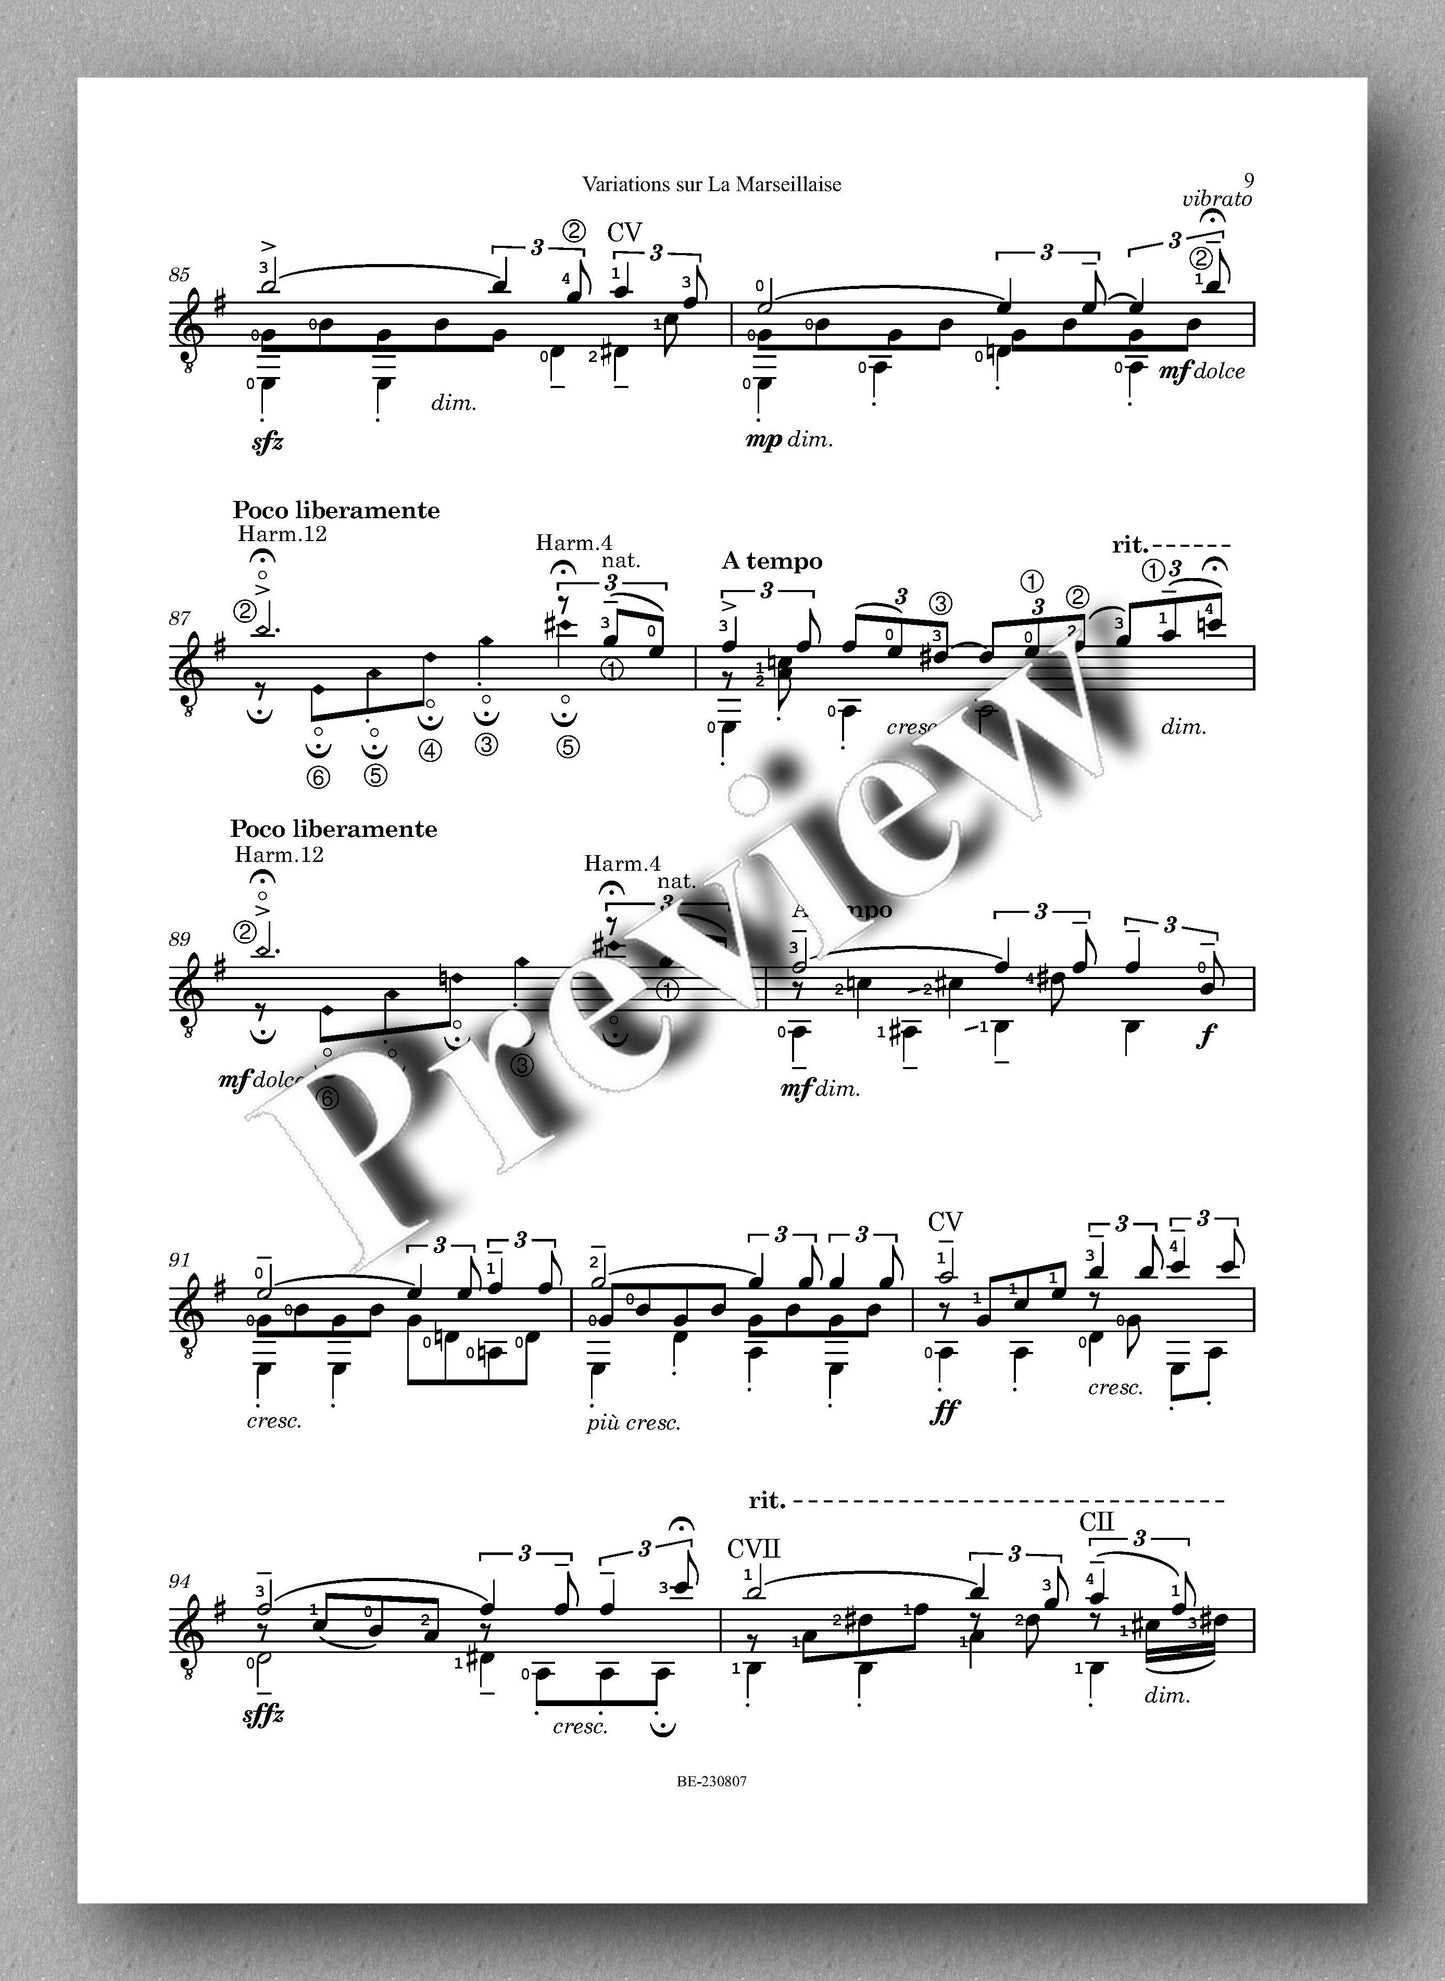 Colette Mourey, Variations sur La Marseillaise - preview of the music score 2